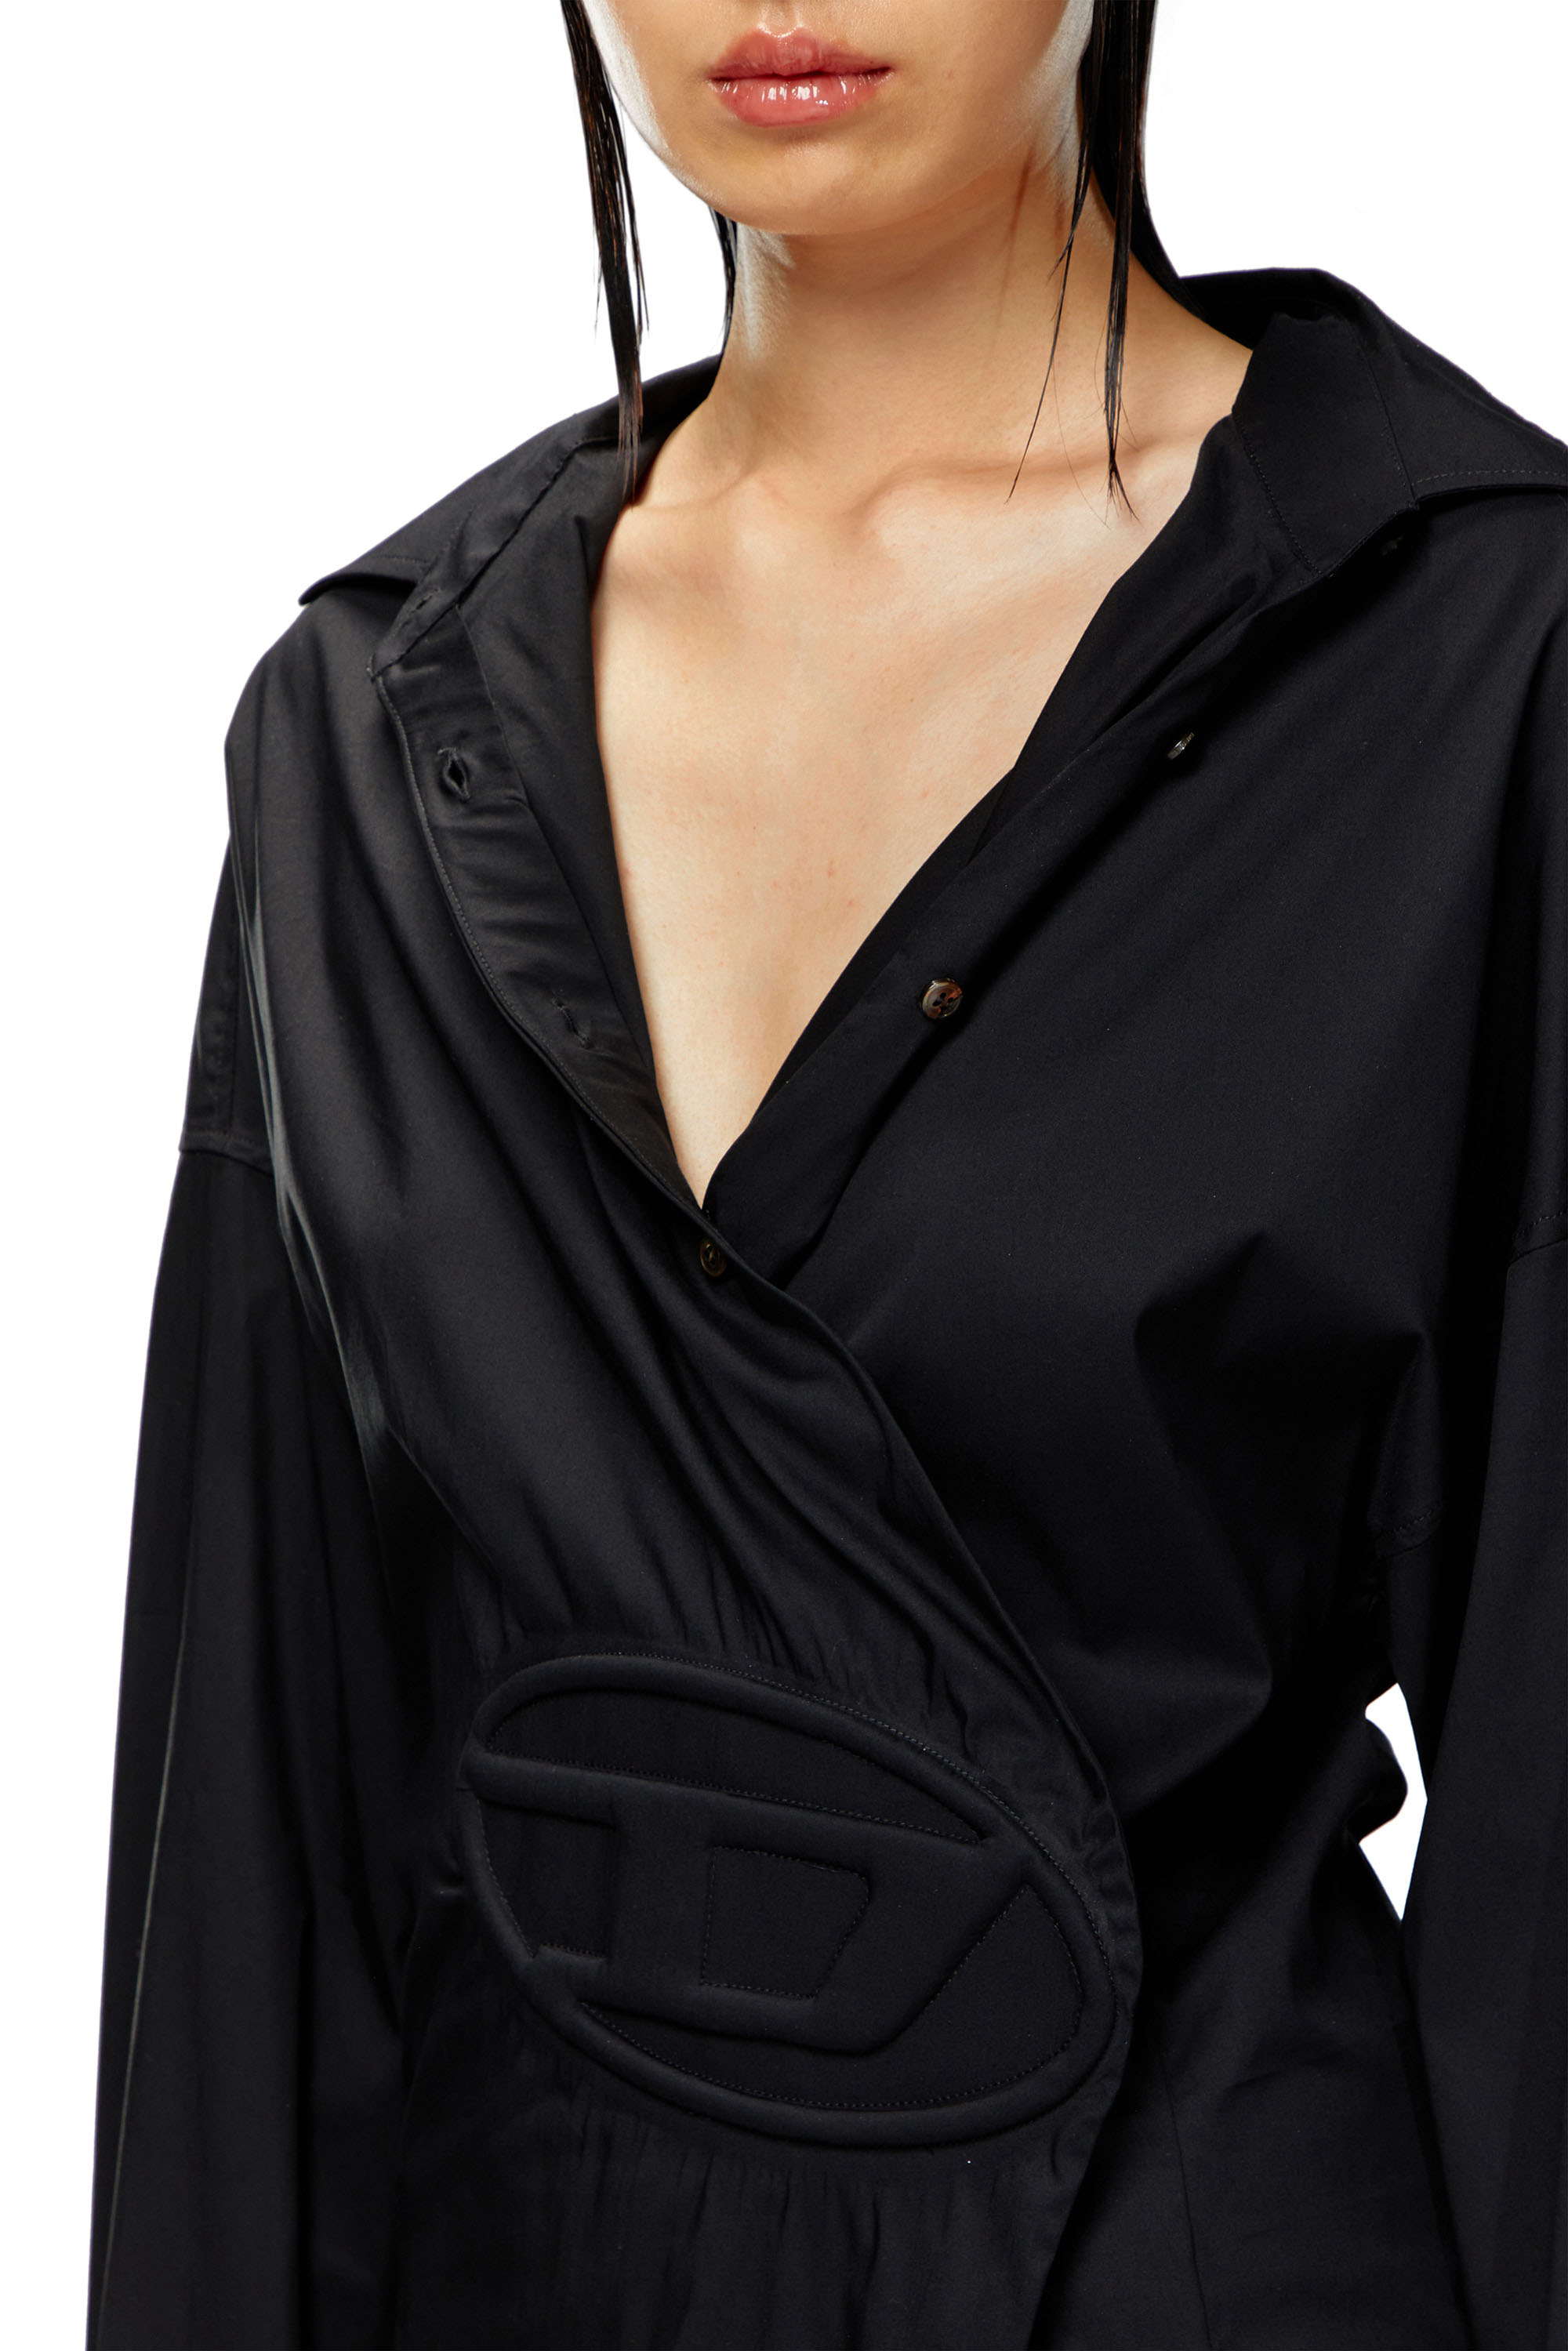 Diesel - D-SIZEN-N1, Woman Short shirt dress in stretch poplin in Black - Image 4